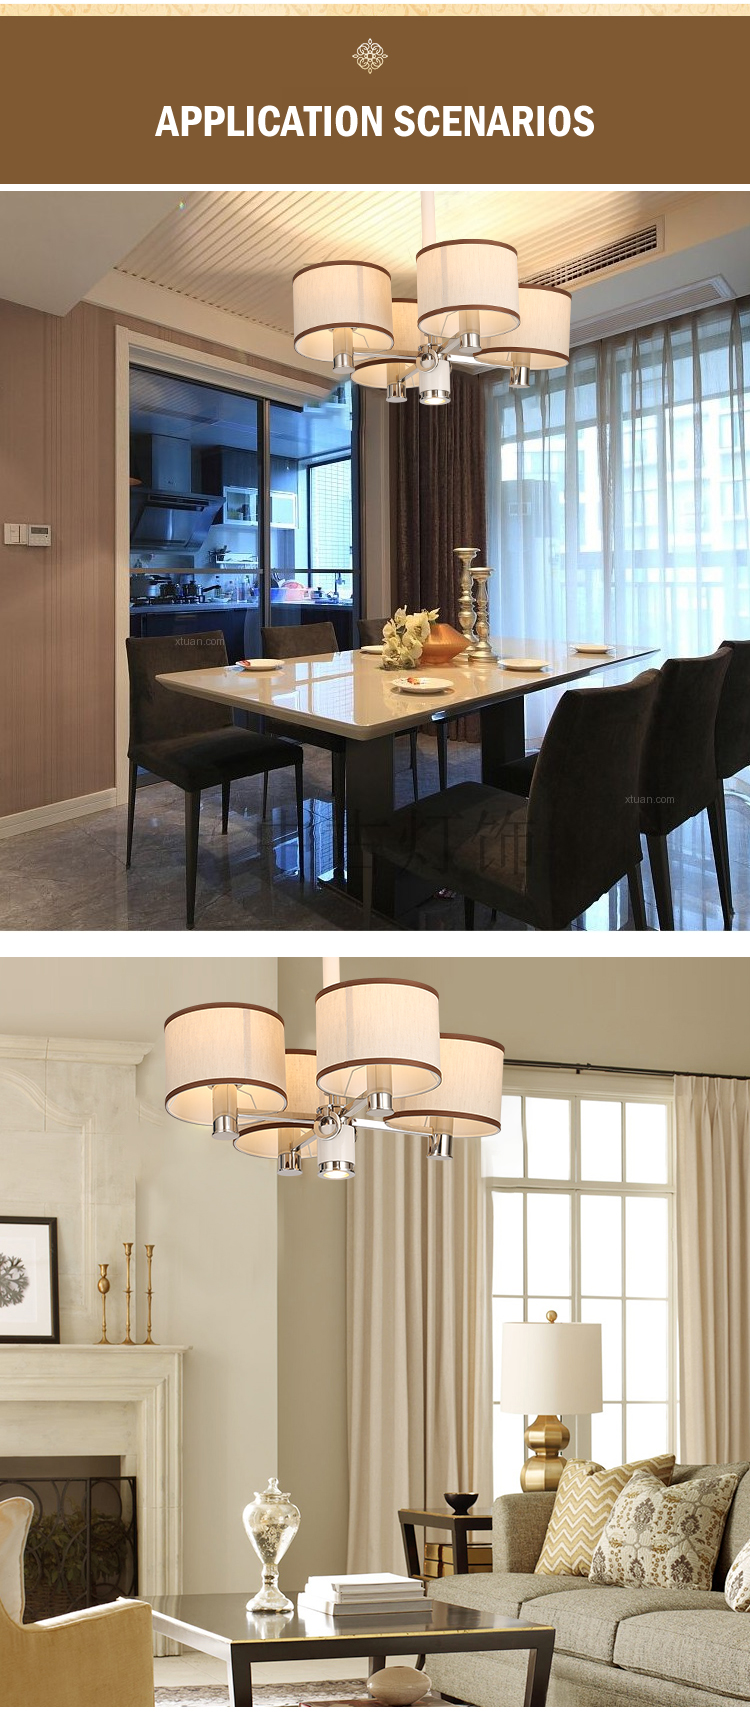 Nuovo prodotto Decorativo per interni Villa Hotel Lampadario in rame bianco in acciaio inossidabile con lampada a sospensione